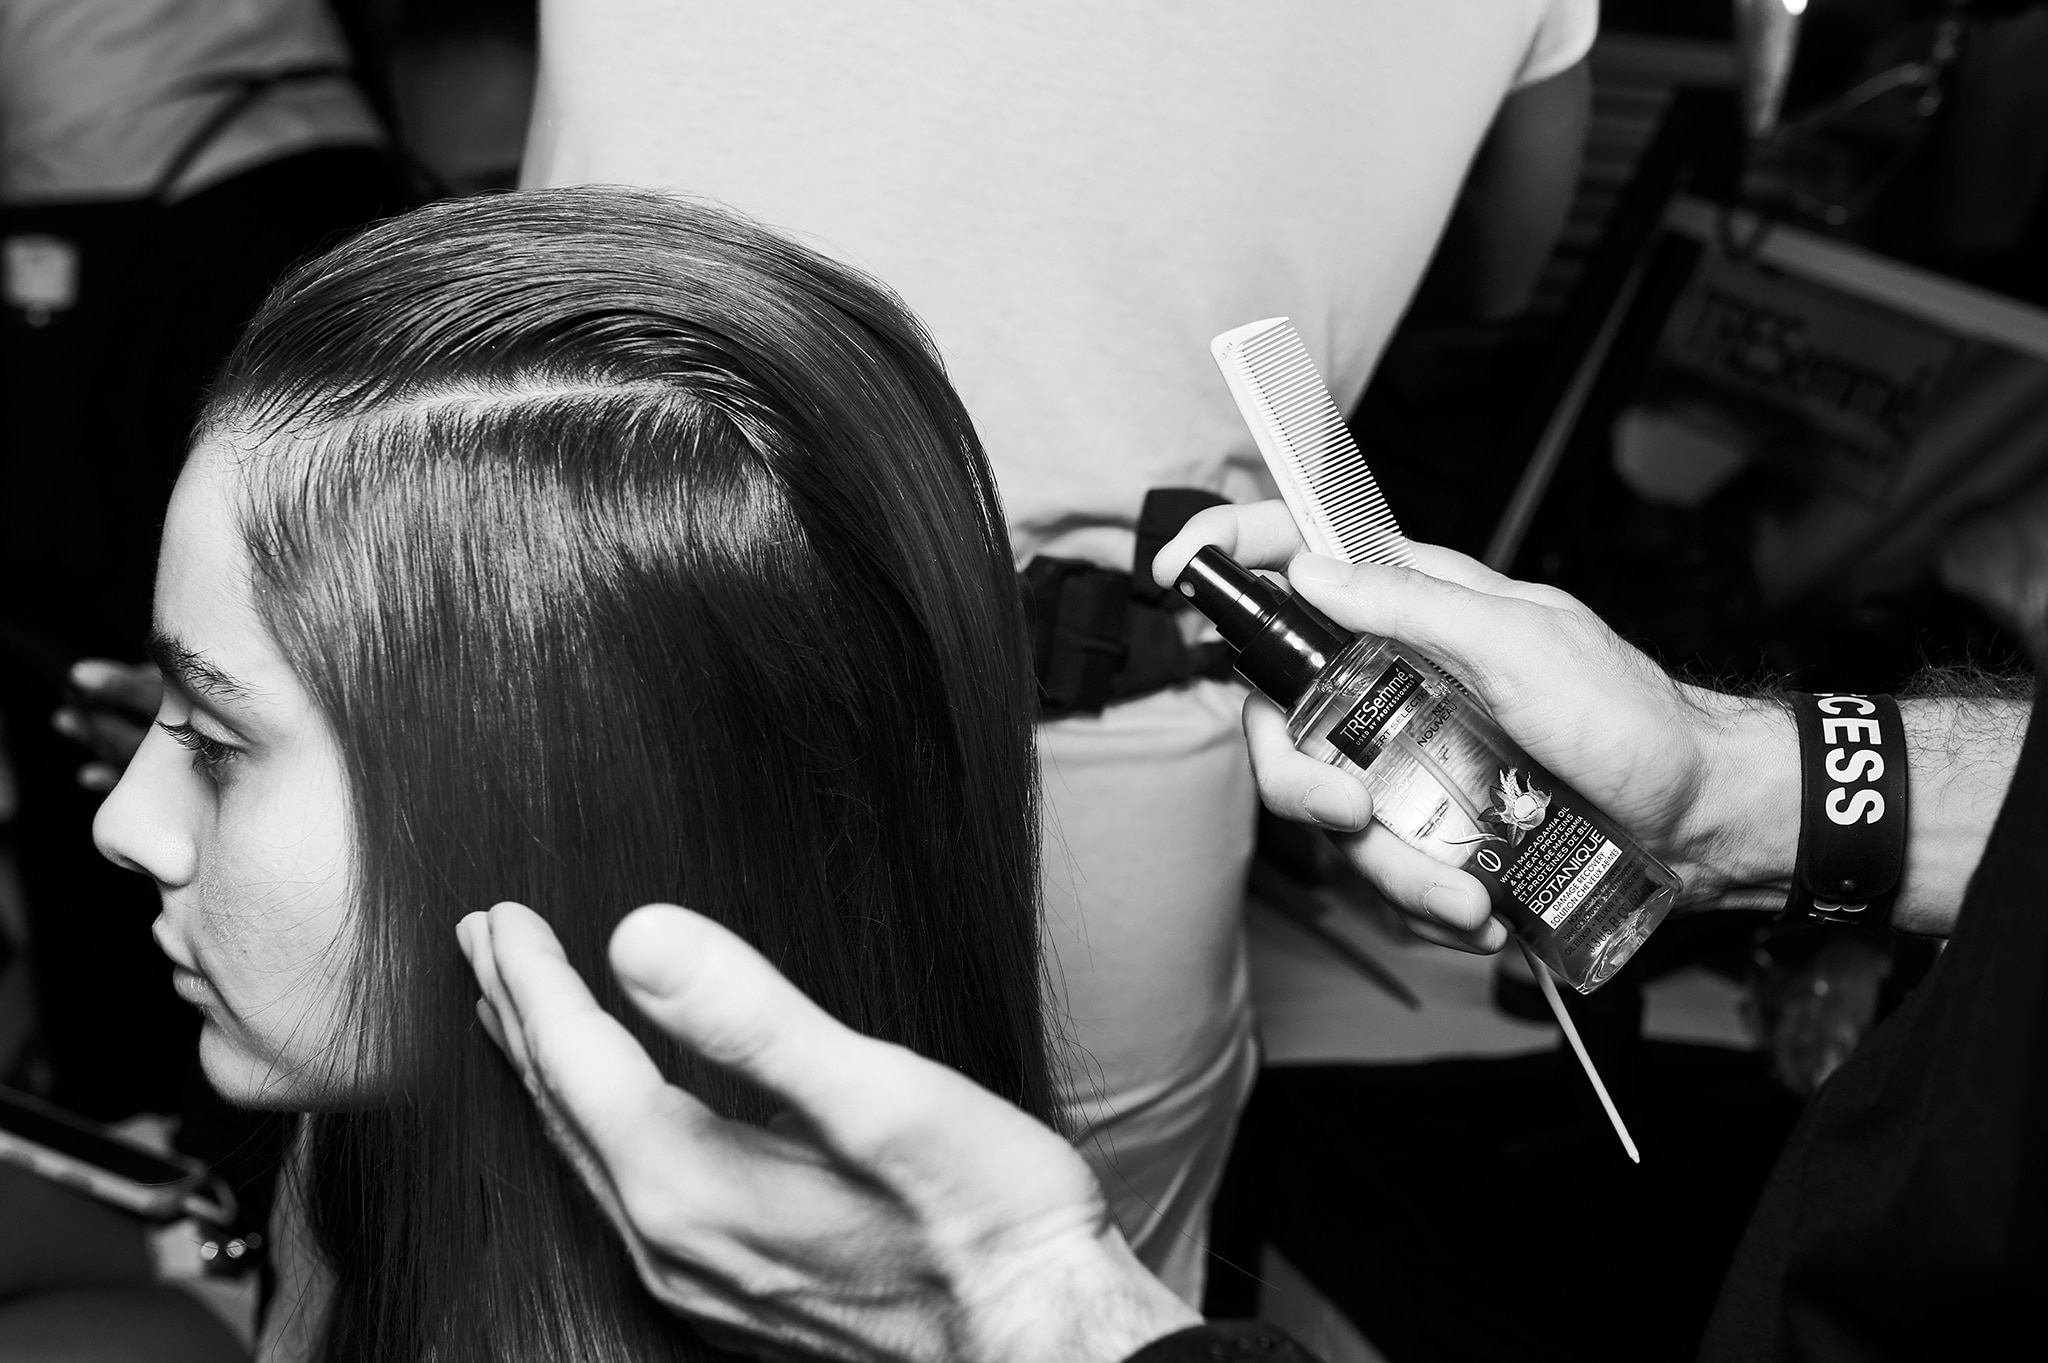 Um cabeleireiro segurando um tubo de produto e colocando um pouco do seu conteúdo nas mãos, preparando-se para aplicá-lo no cabelo de uma modelo.